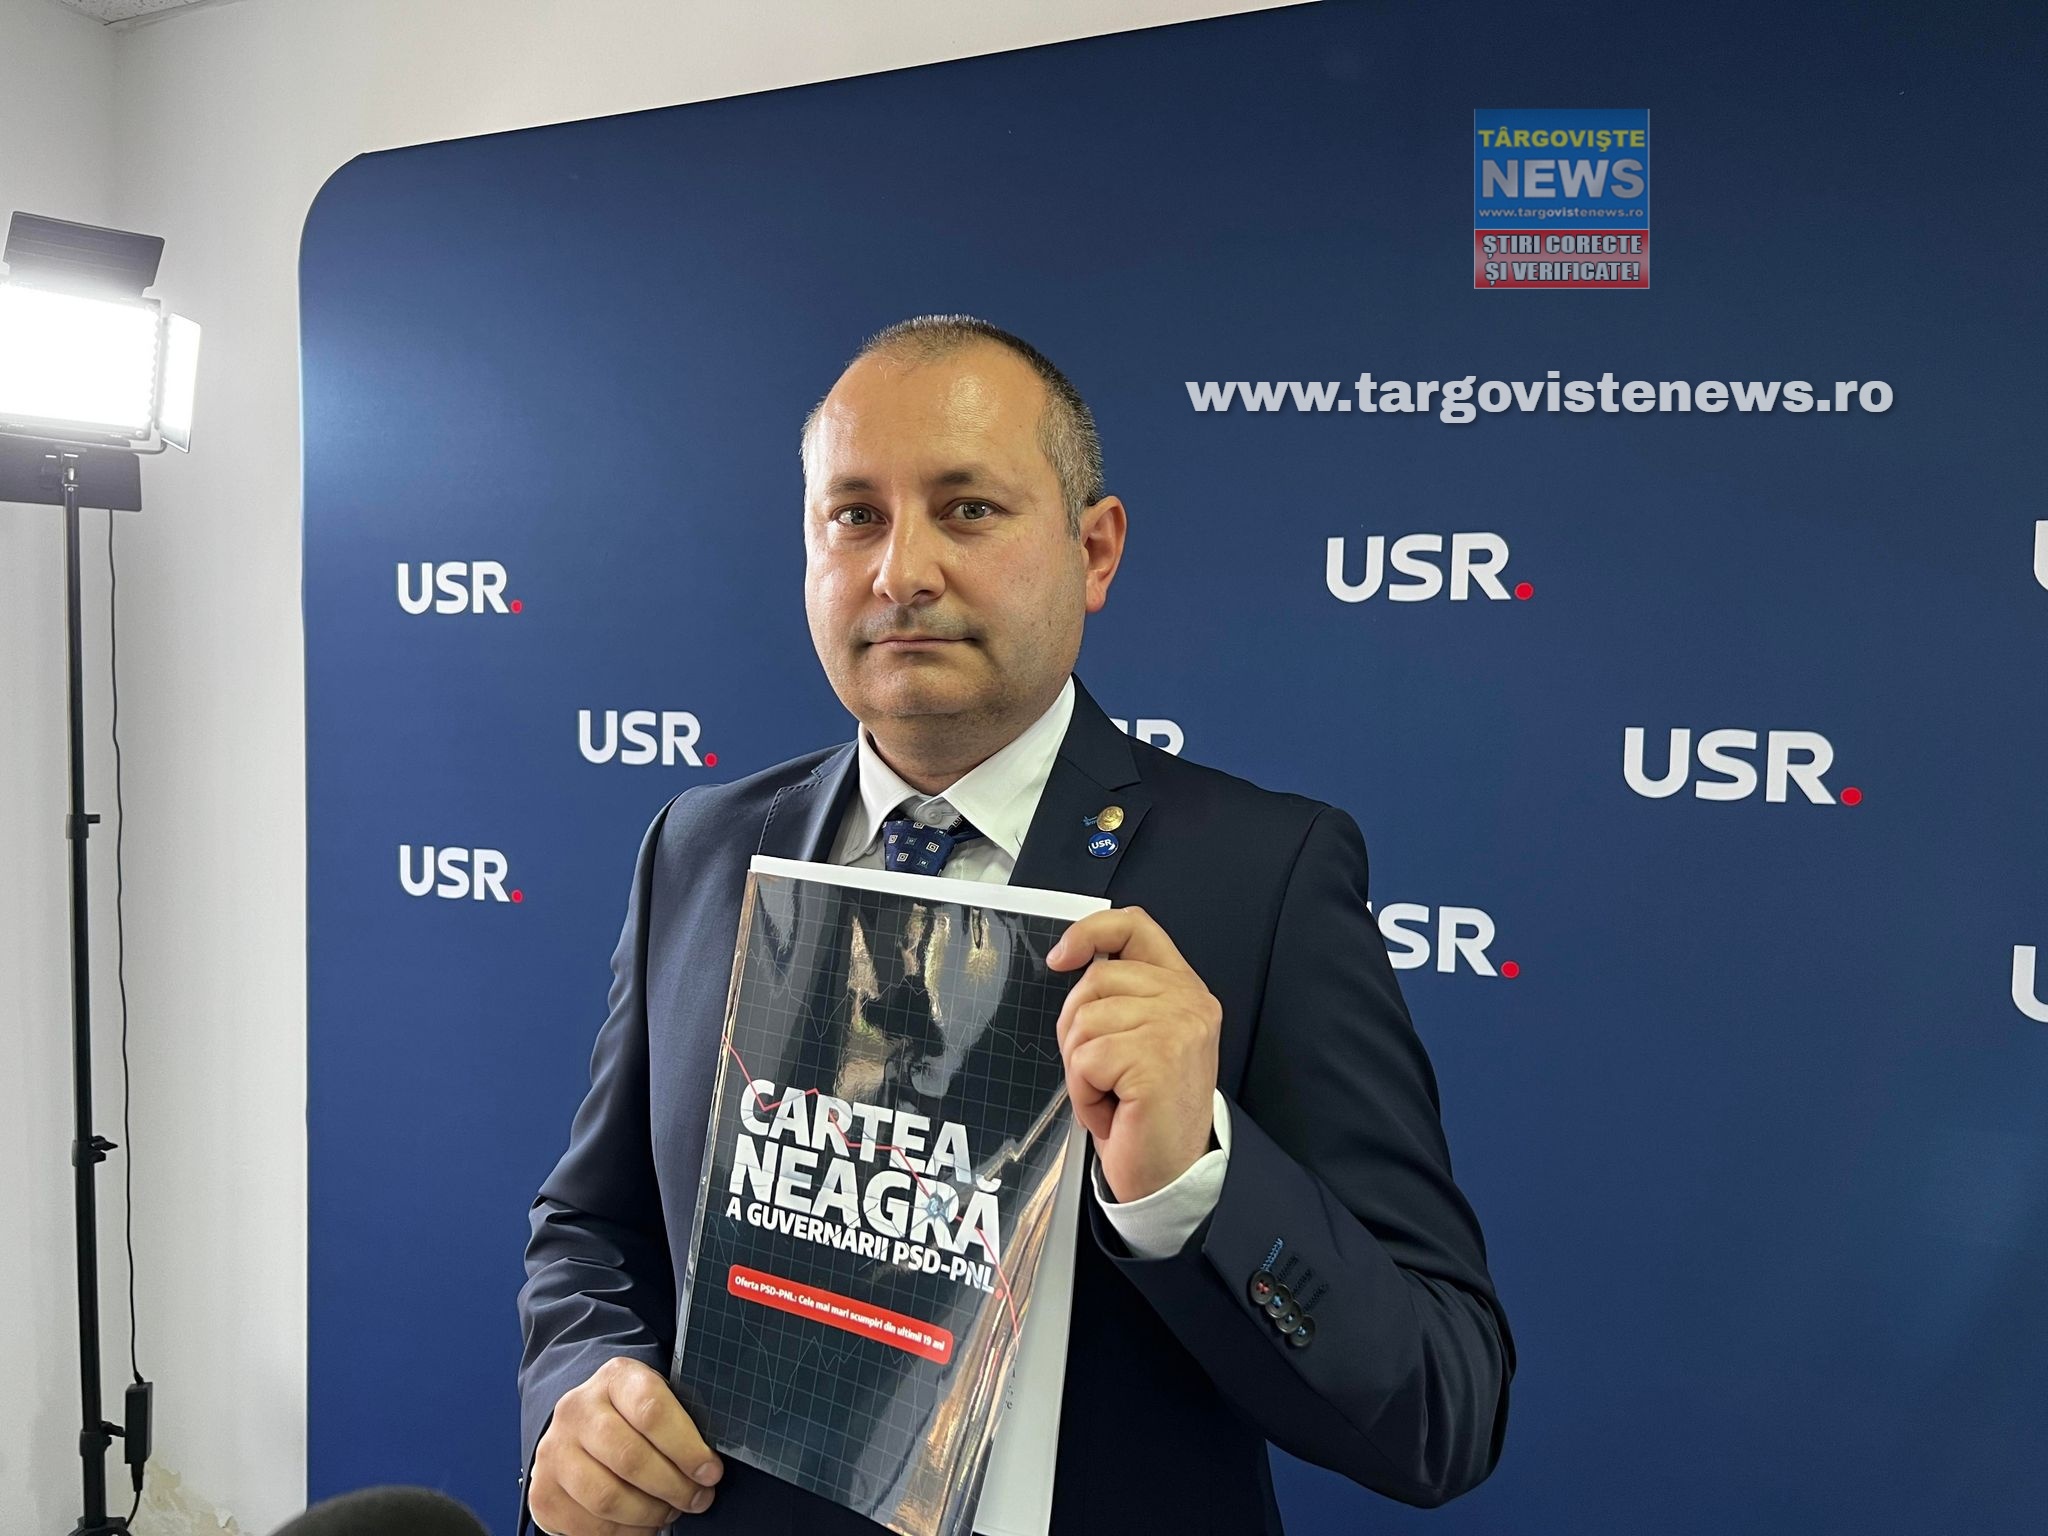 Deputatul Daniel Blaga: “USR lansează Cartea Neagră a guvernării PSD-PNL. Un an de guvernare PSD-PNL – scumpiri record, plagiate și proiecte ratate”